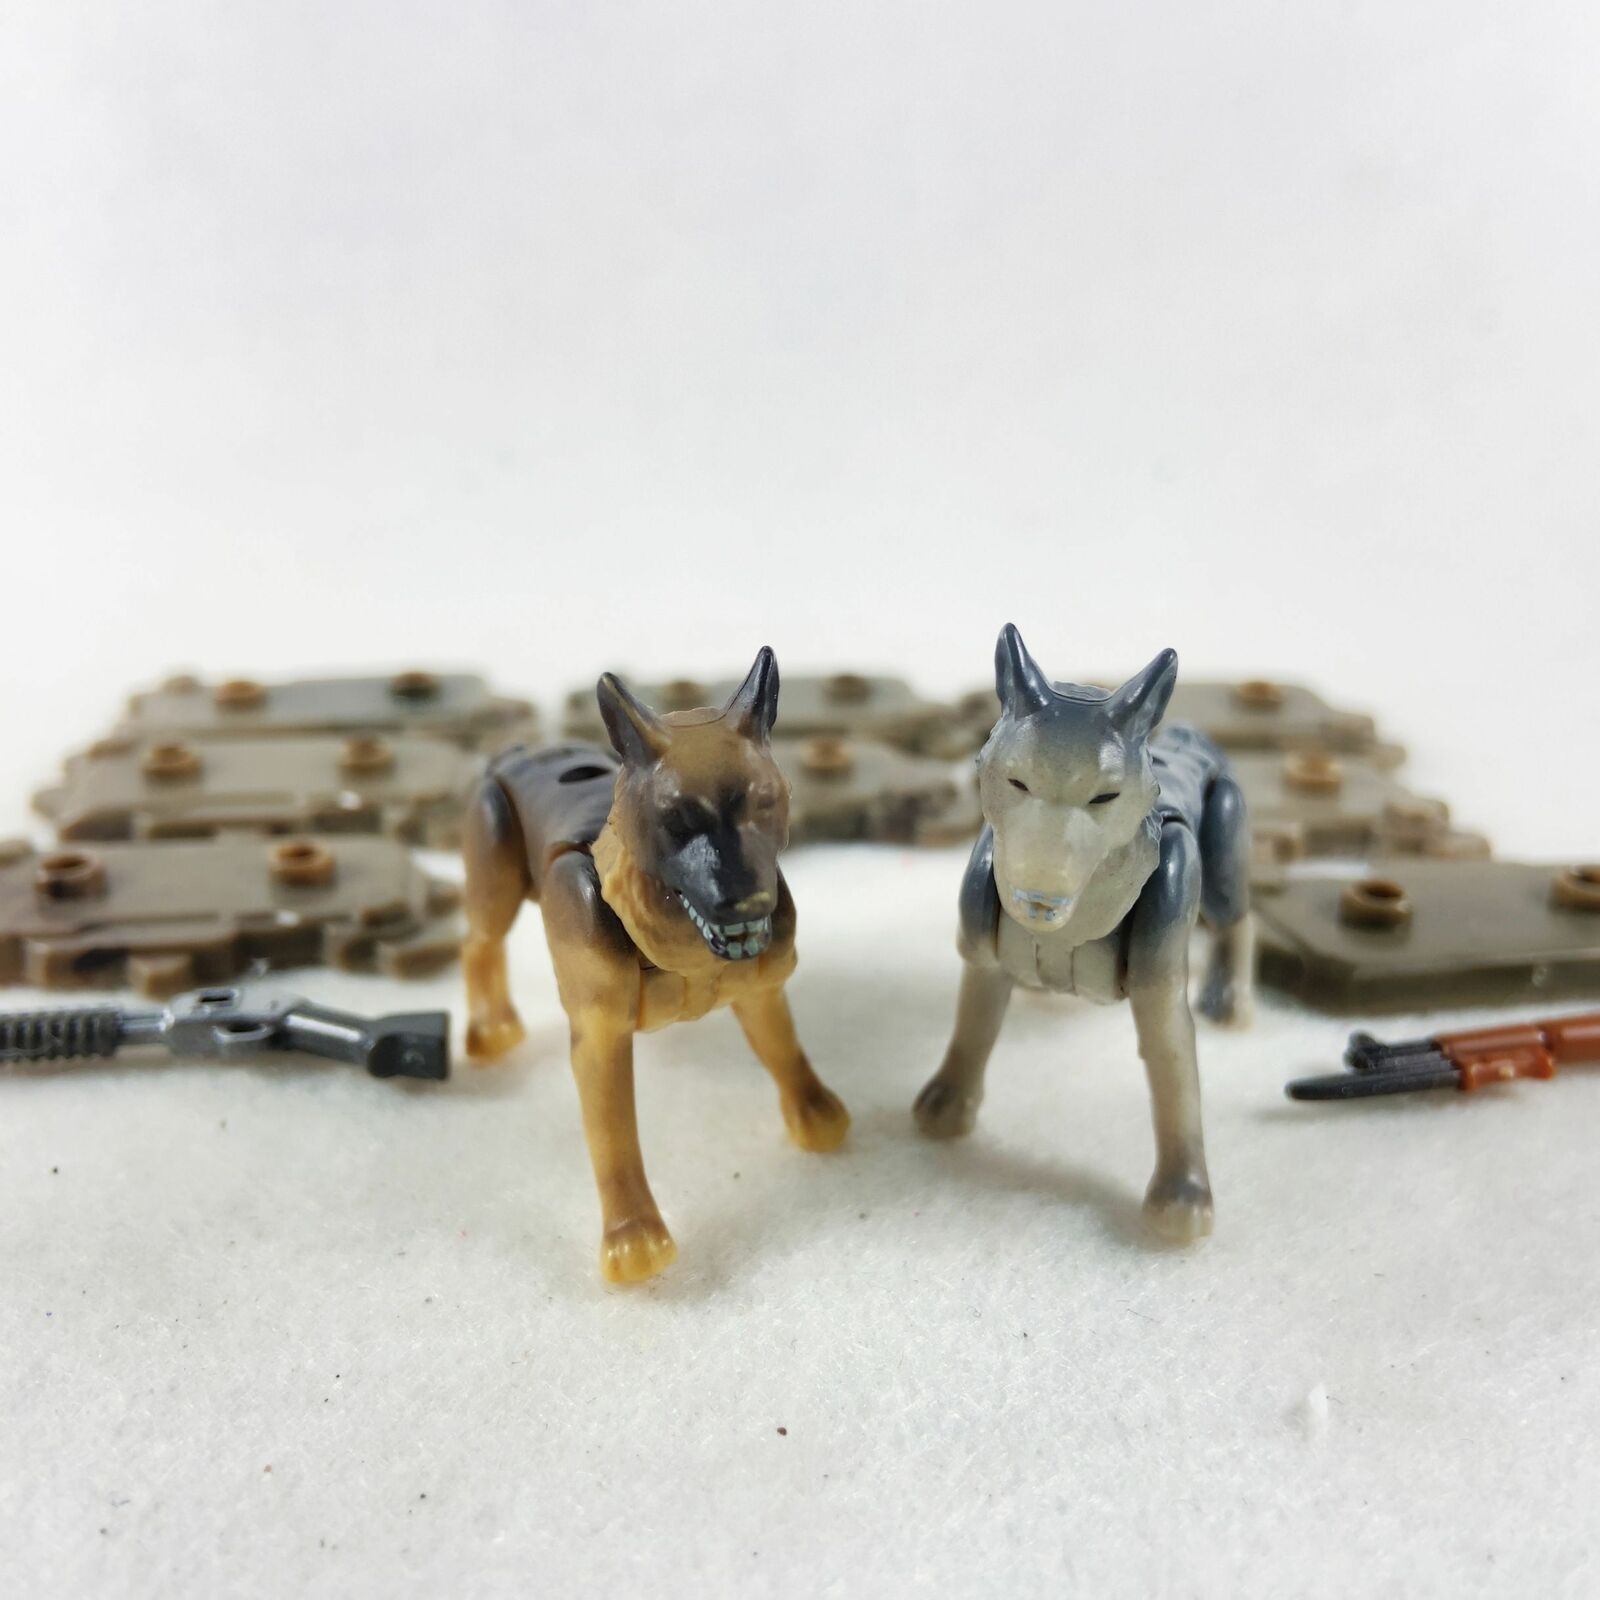 Lot Of 2pcs Mega Bloks Construx Hunt Dogs Mini Figures Toy With Guns